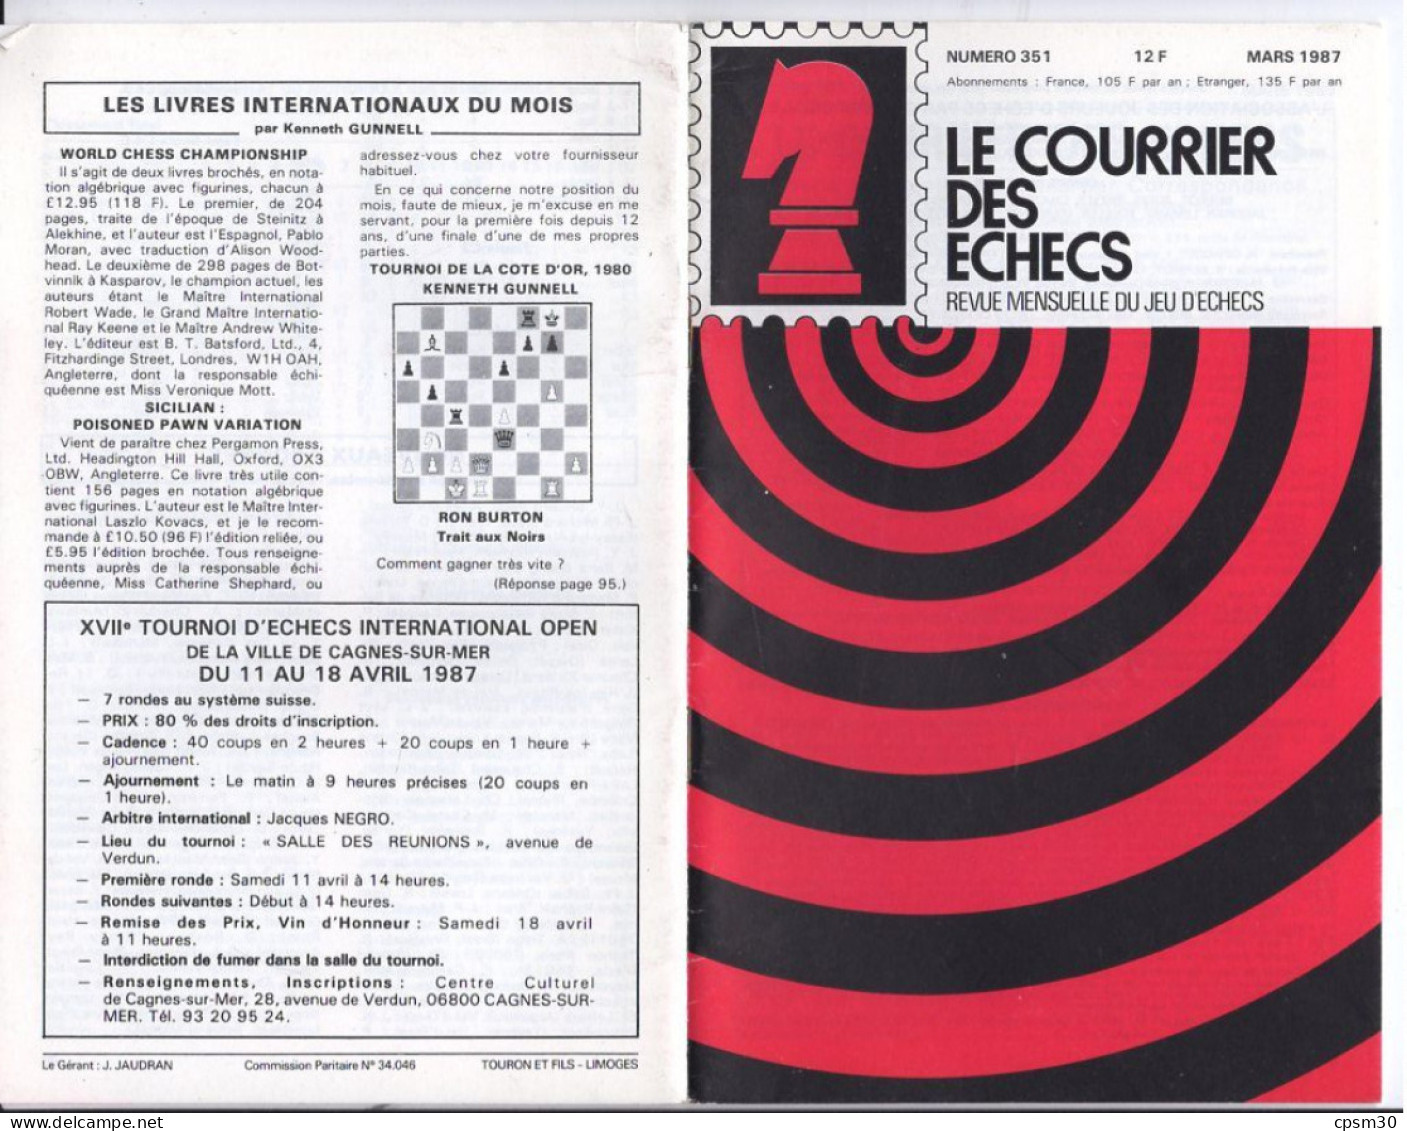 LIVRE - Le Courrier des Echecs, revue mensuelle du jeu d'echec, 15 n° de 322 juillet 1984 à 393 janvier 1991